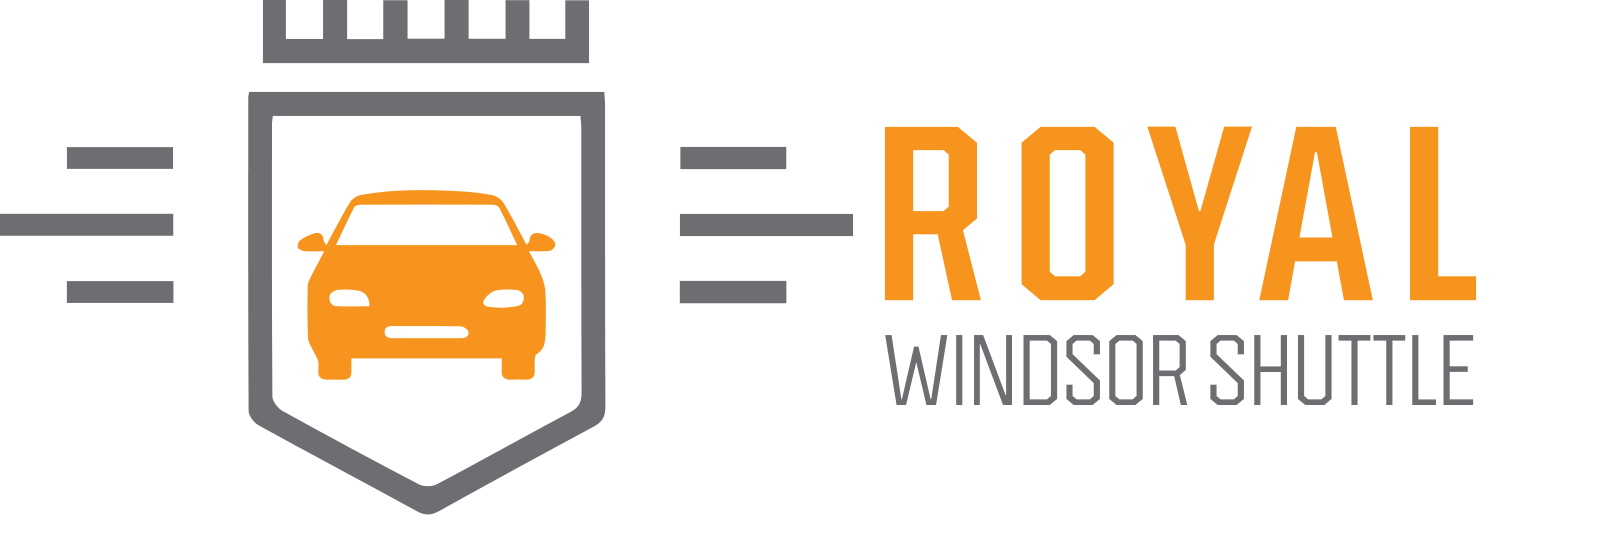 Royal Windsor Shuttle Logo